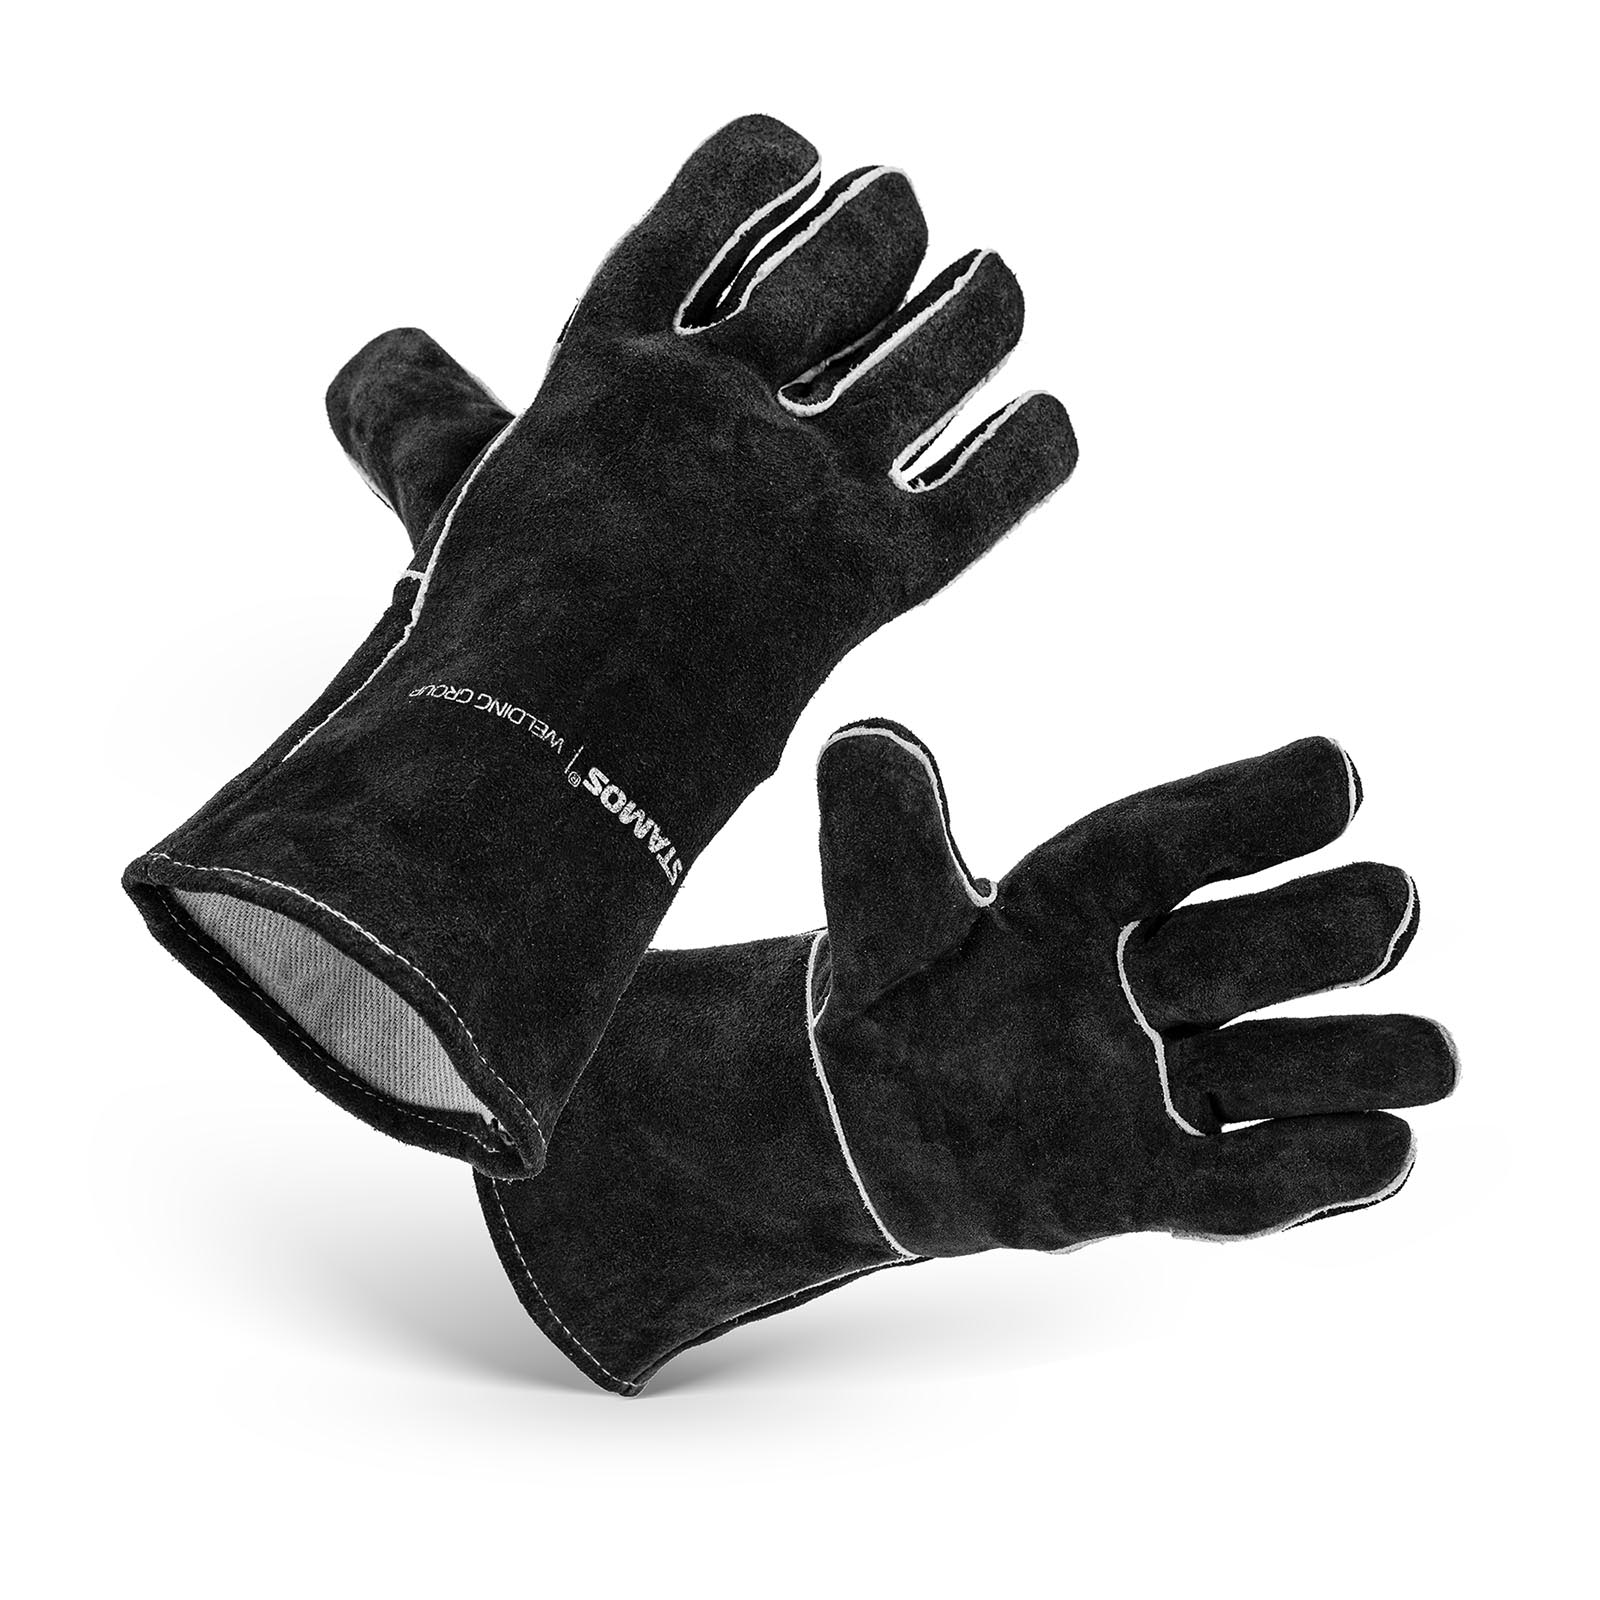 Welding Gloves - size XXL - 34 x 19 cm